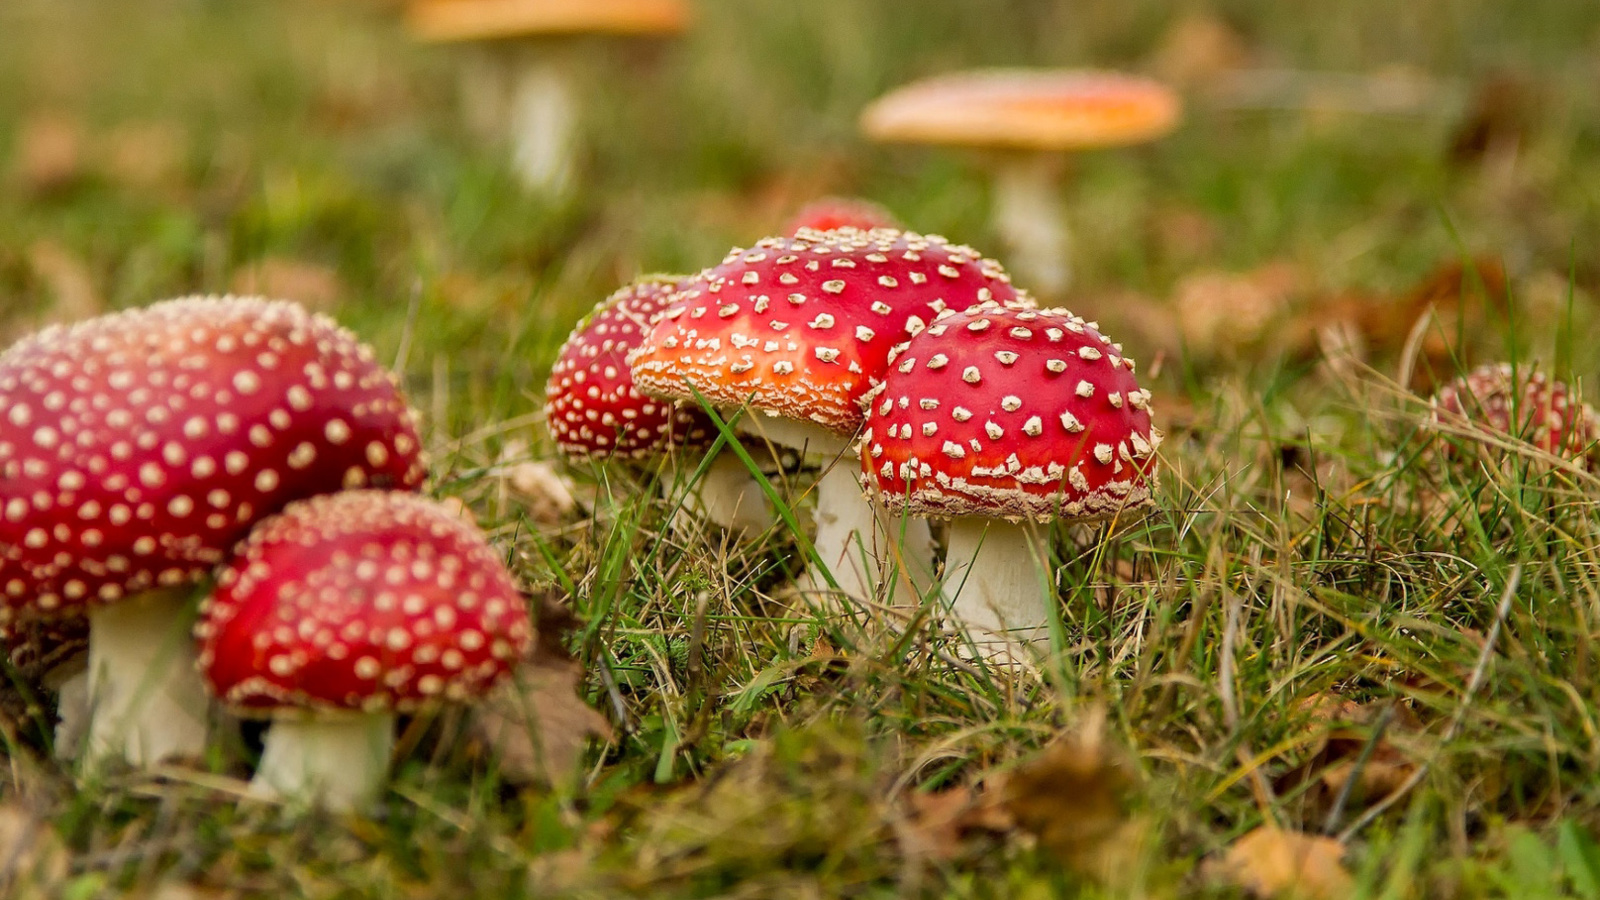 Amanita mushrooms screenshot #1 1600x900